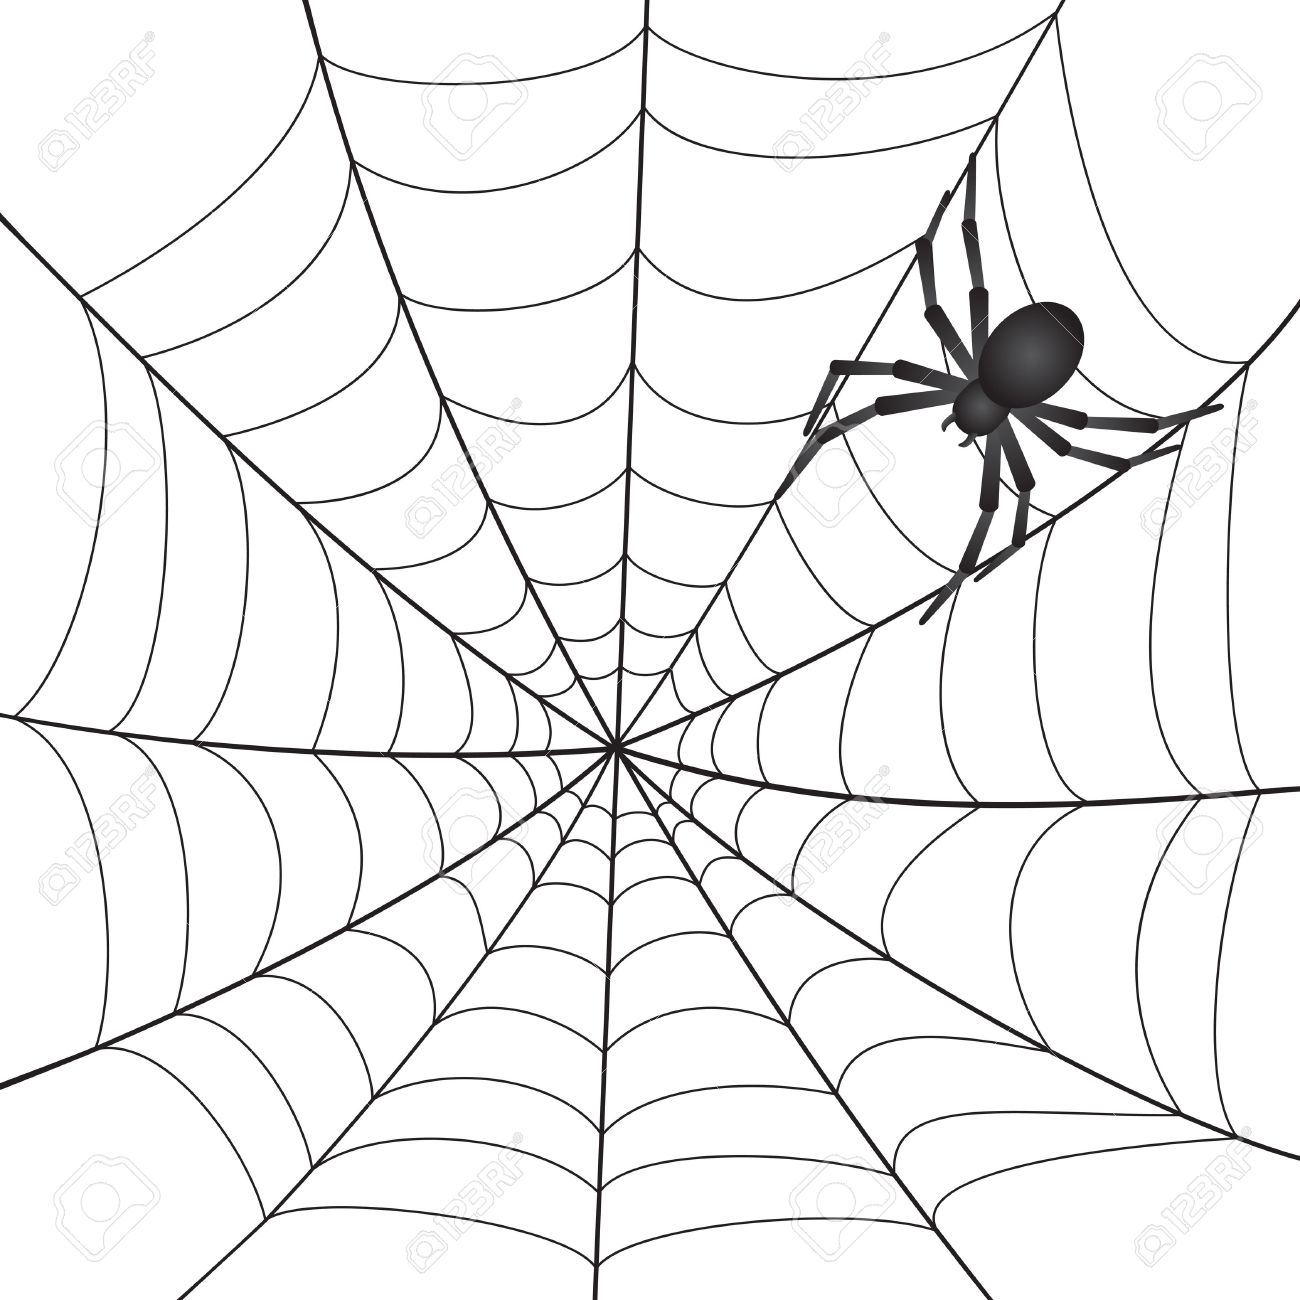 spider net clipart - photo #43